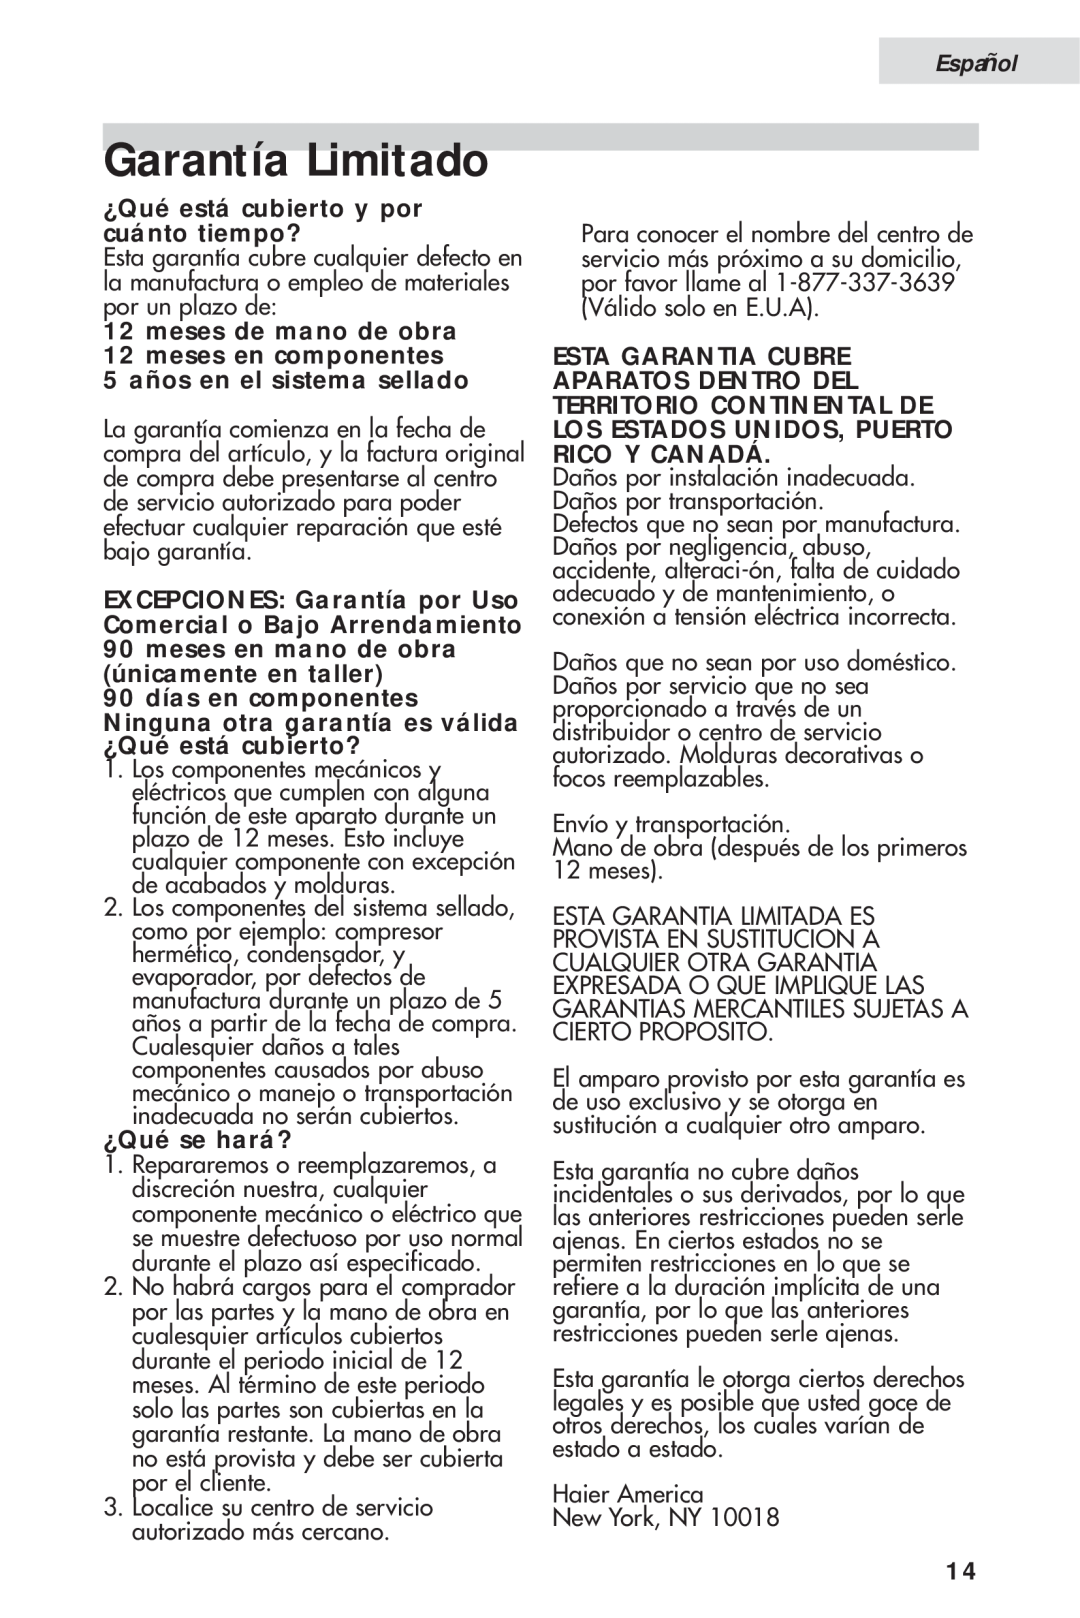 Haier HVH014A manual Garantía Limitado, Español, ¿Qué está cubierto y por cuánto tiempo?, 5 años en el sistema sellado 